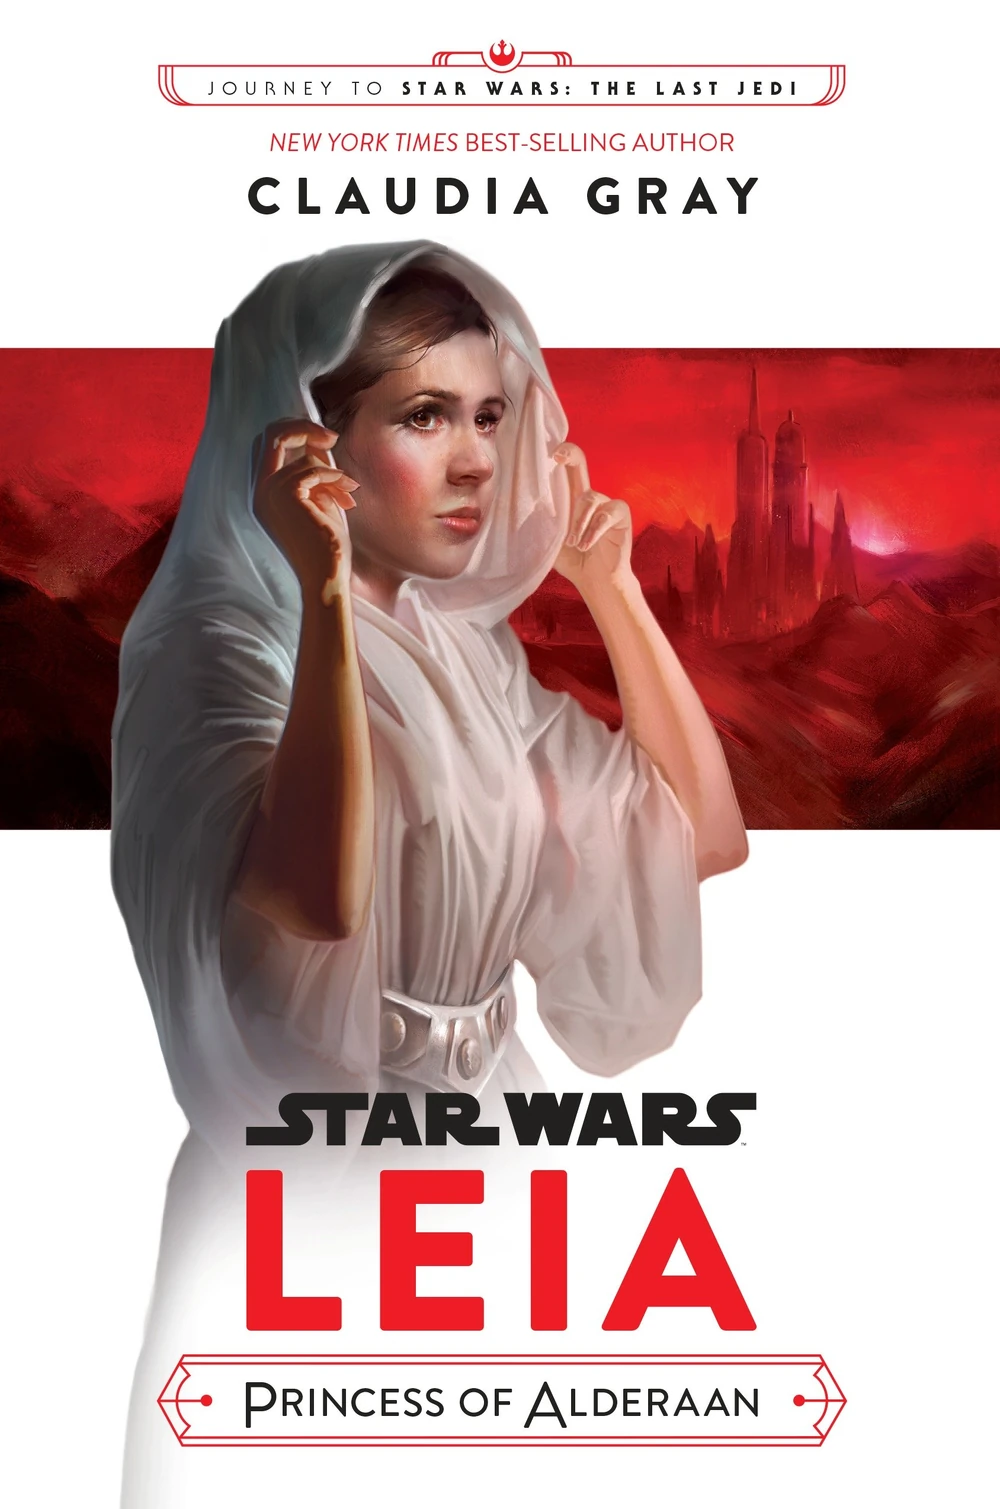 Star Wars: Leia, Princess of Alderaan by Claudia Gray